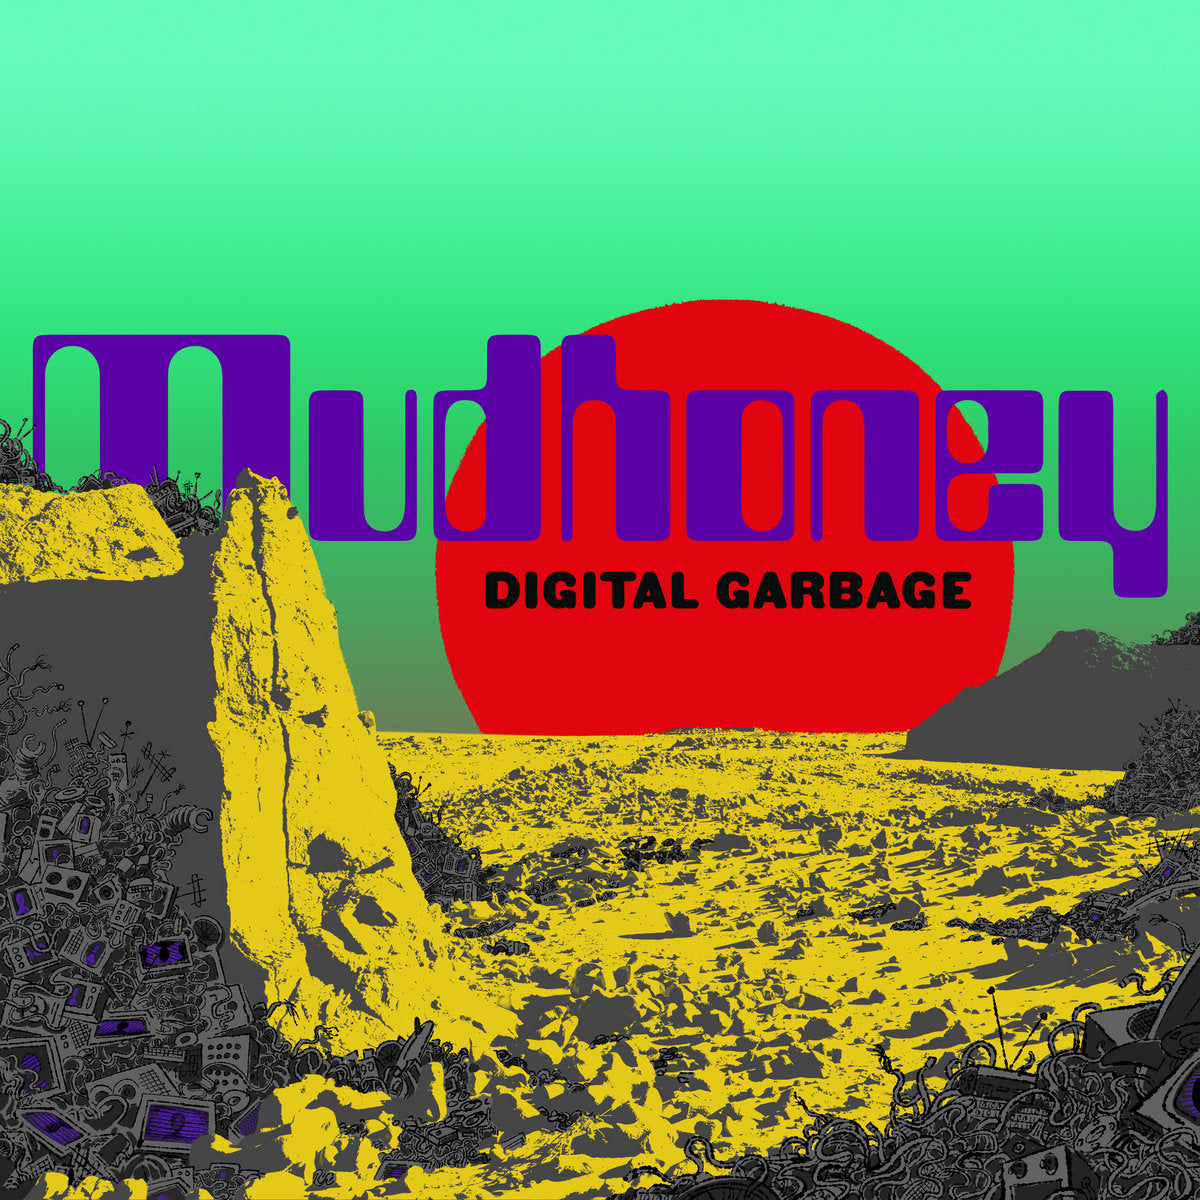 Mudhoney: Digital Garbage (Coloured Vinyl LP)